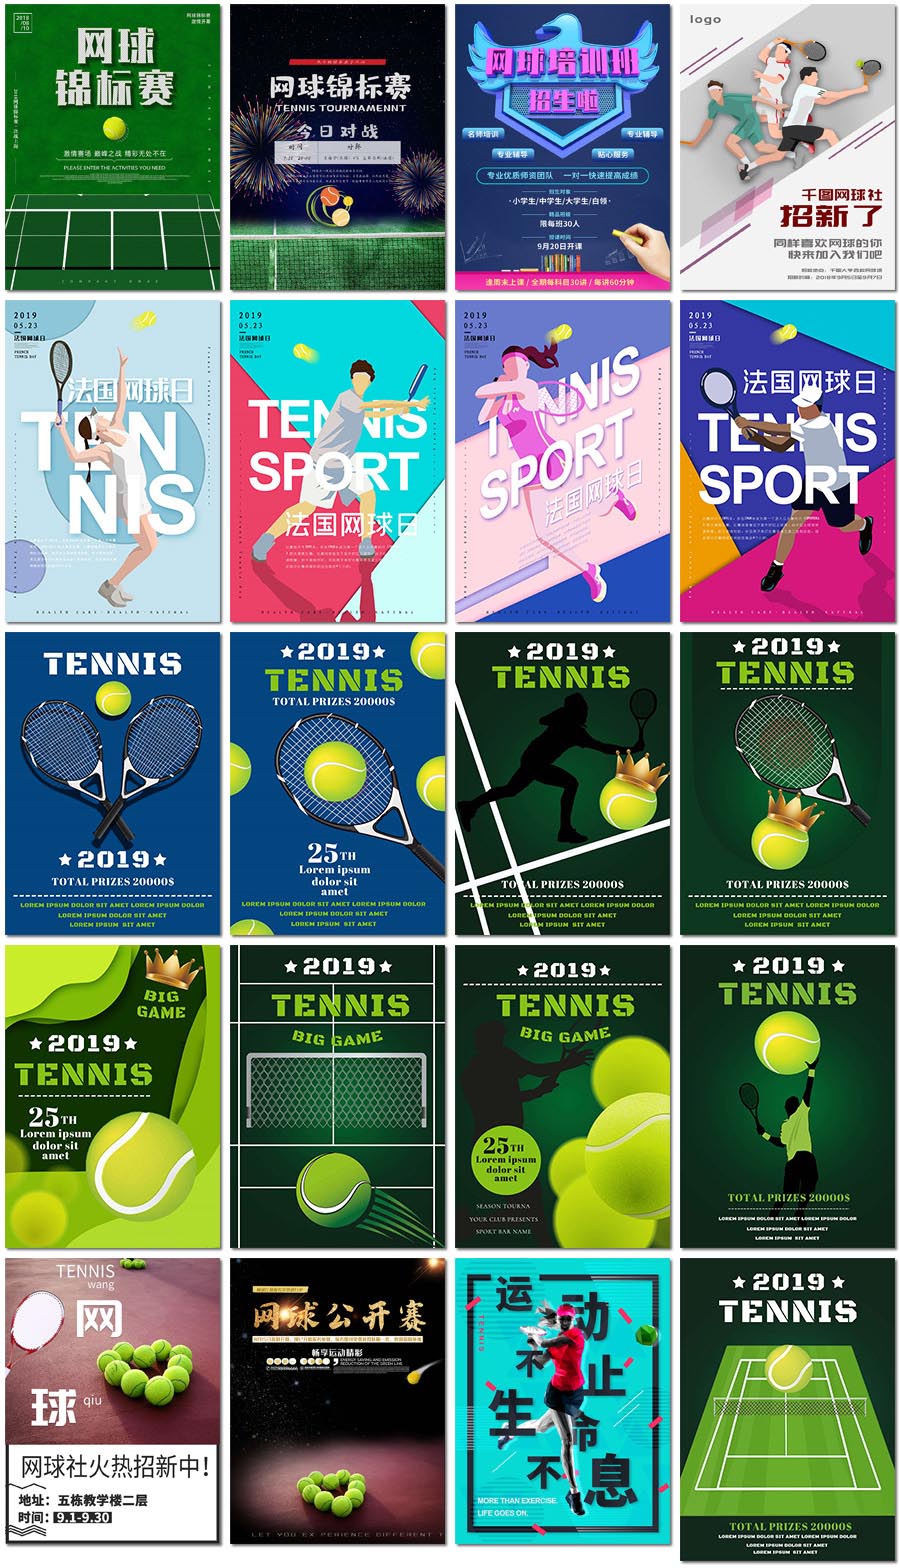 网球日运动公开赛体育比赛运动员训练营招生海报设计psd模板素材